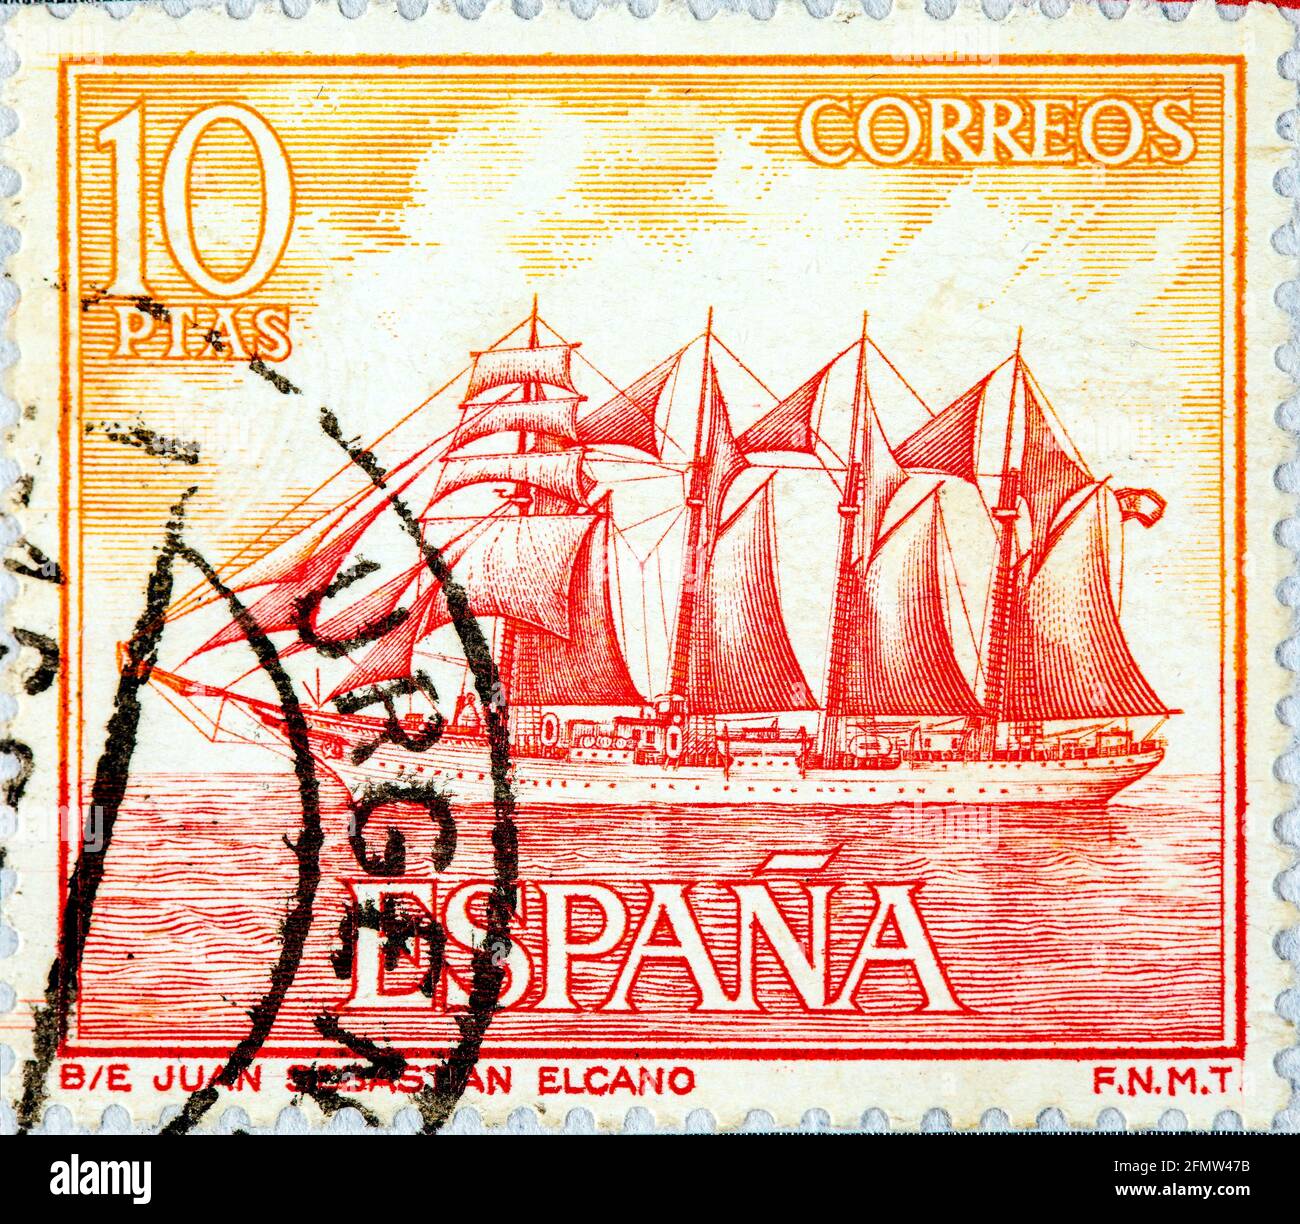 ESPAGNE - VERS 1964: Un timbre imprimé en Espagne montre, de la série hommage à la Marine espagnole, 'Juan Sebastian Elcano' navire scolaire, vers 1964 Banque D'Images